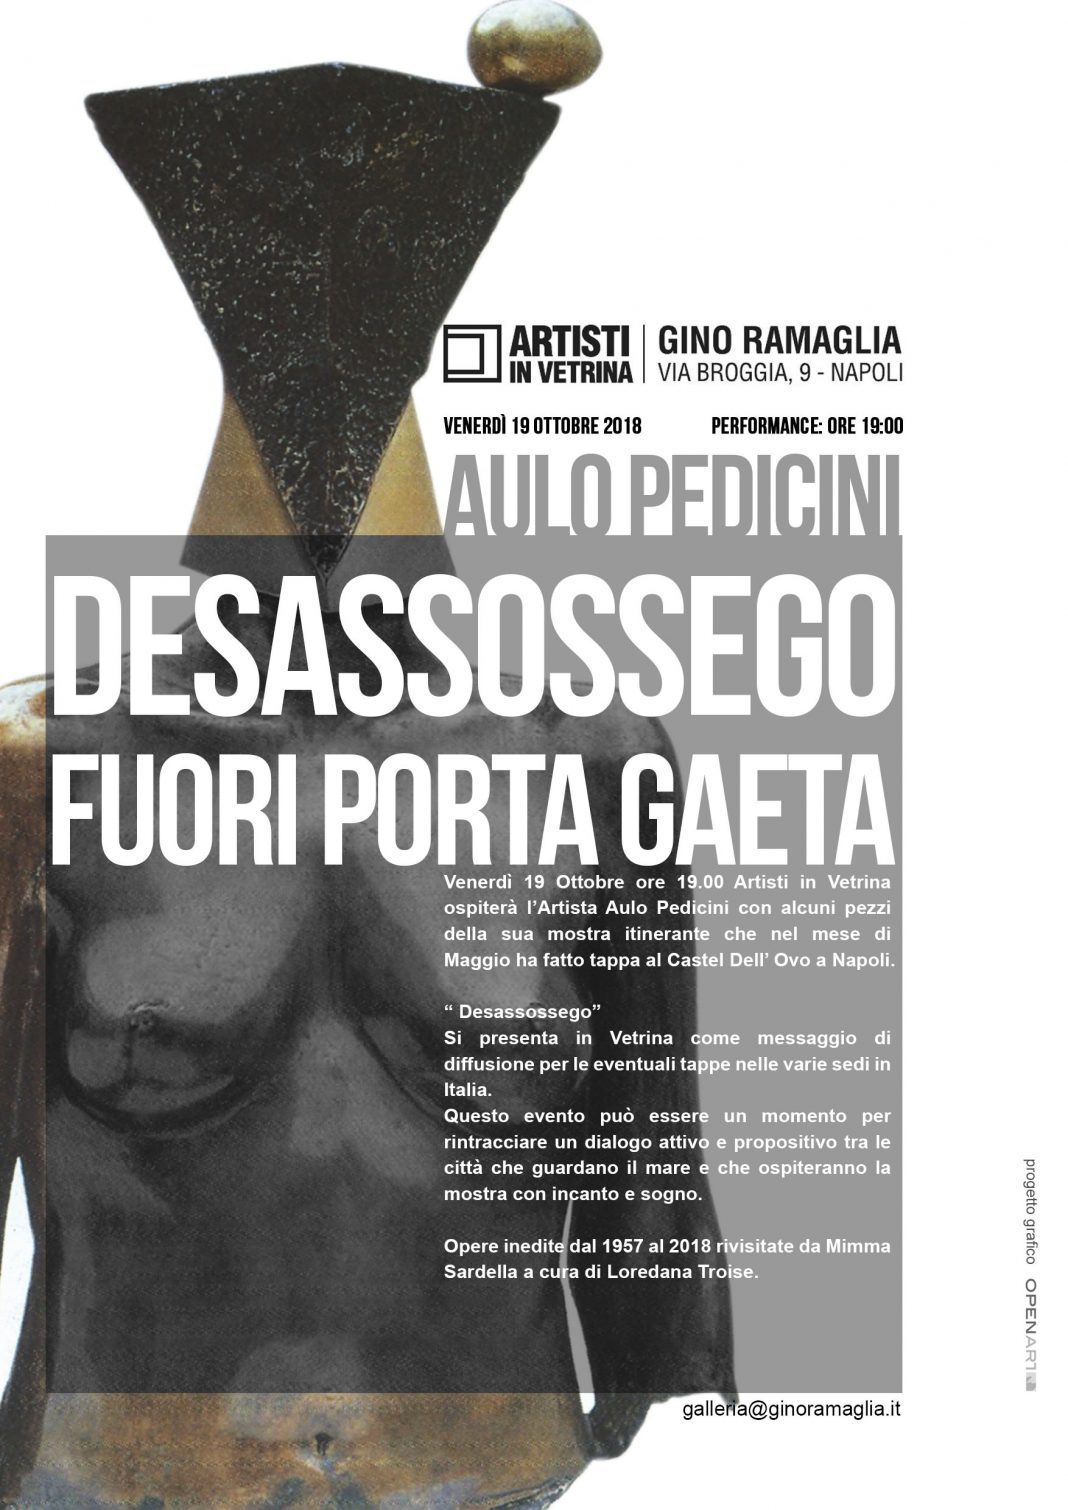 Aulo Pedicini  – Desassossego. Fuori Porta Gaetahttps://www.exibart.com/repository/media/eventi/2018/10/aulo-pedicini-8211-desassossego.-fuori-porta-gaeta-1068x1510.jpg